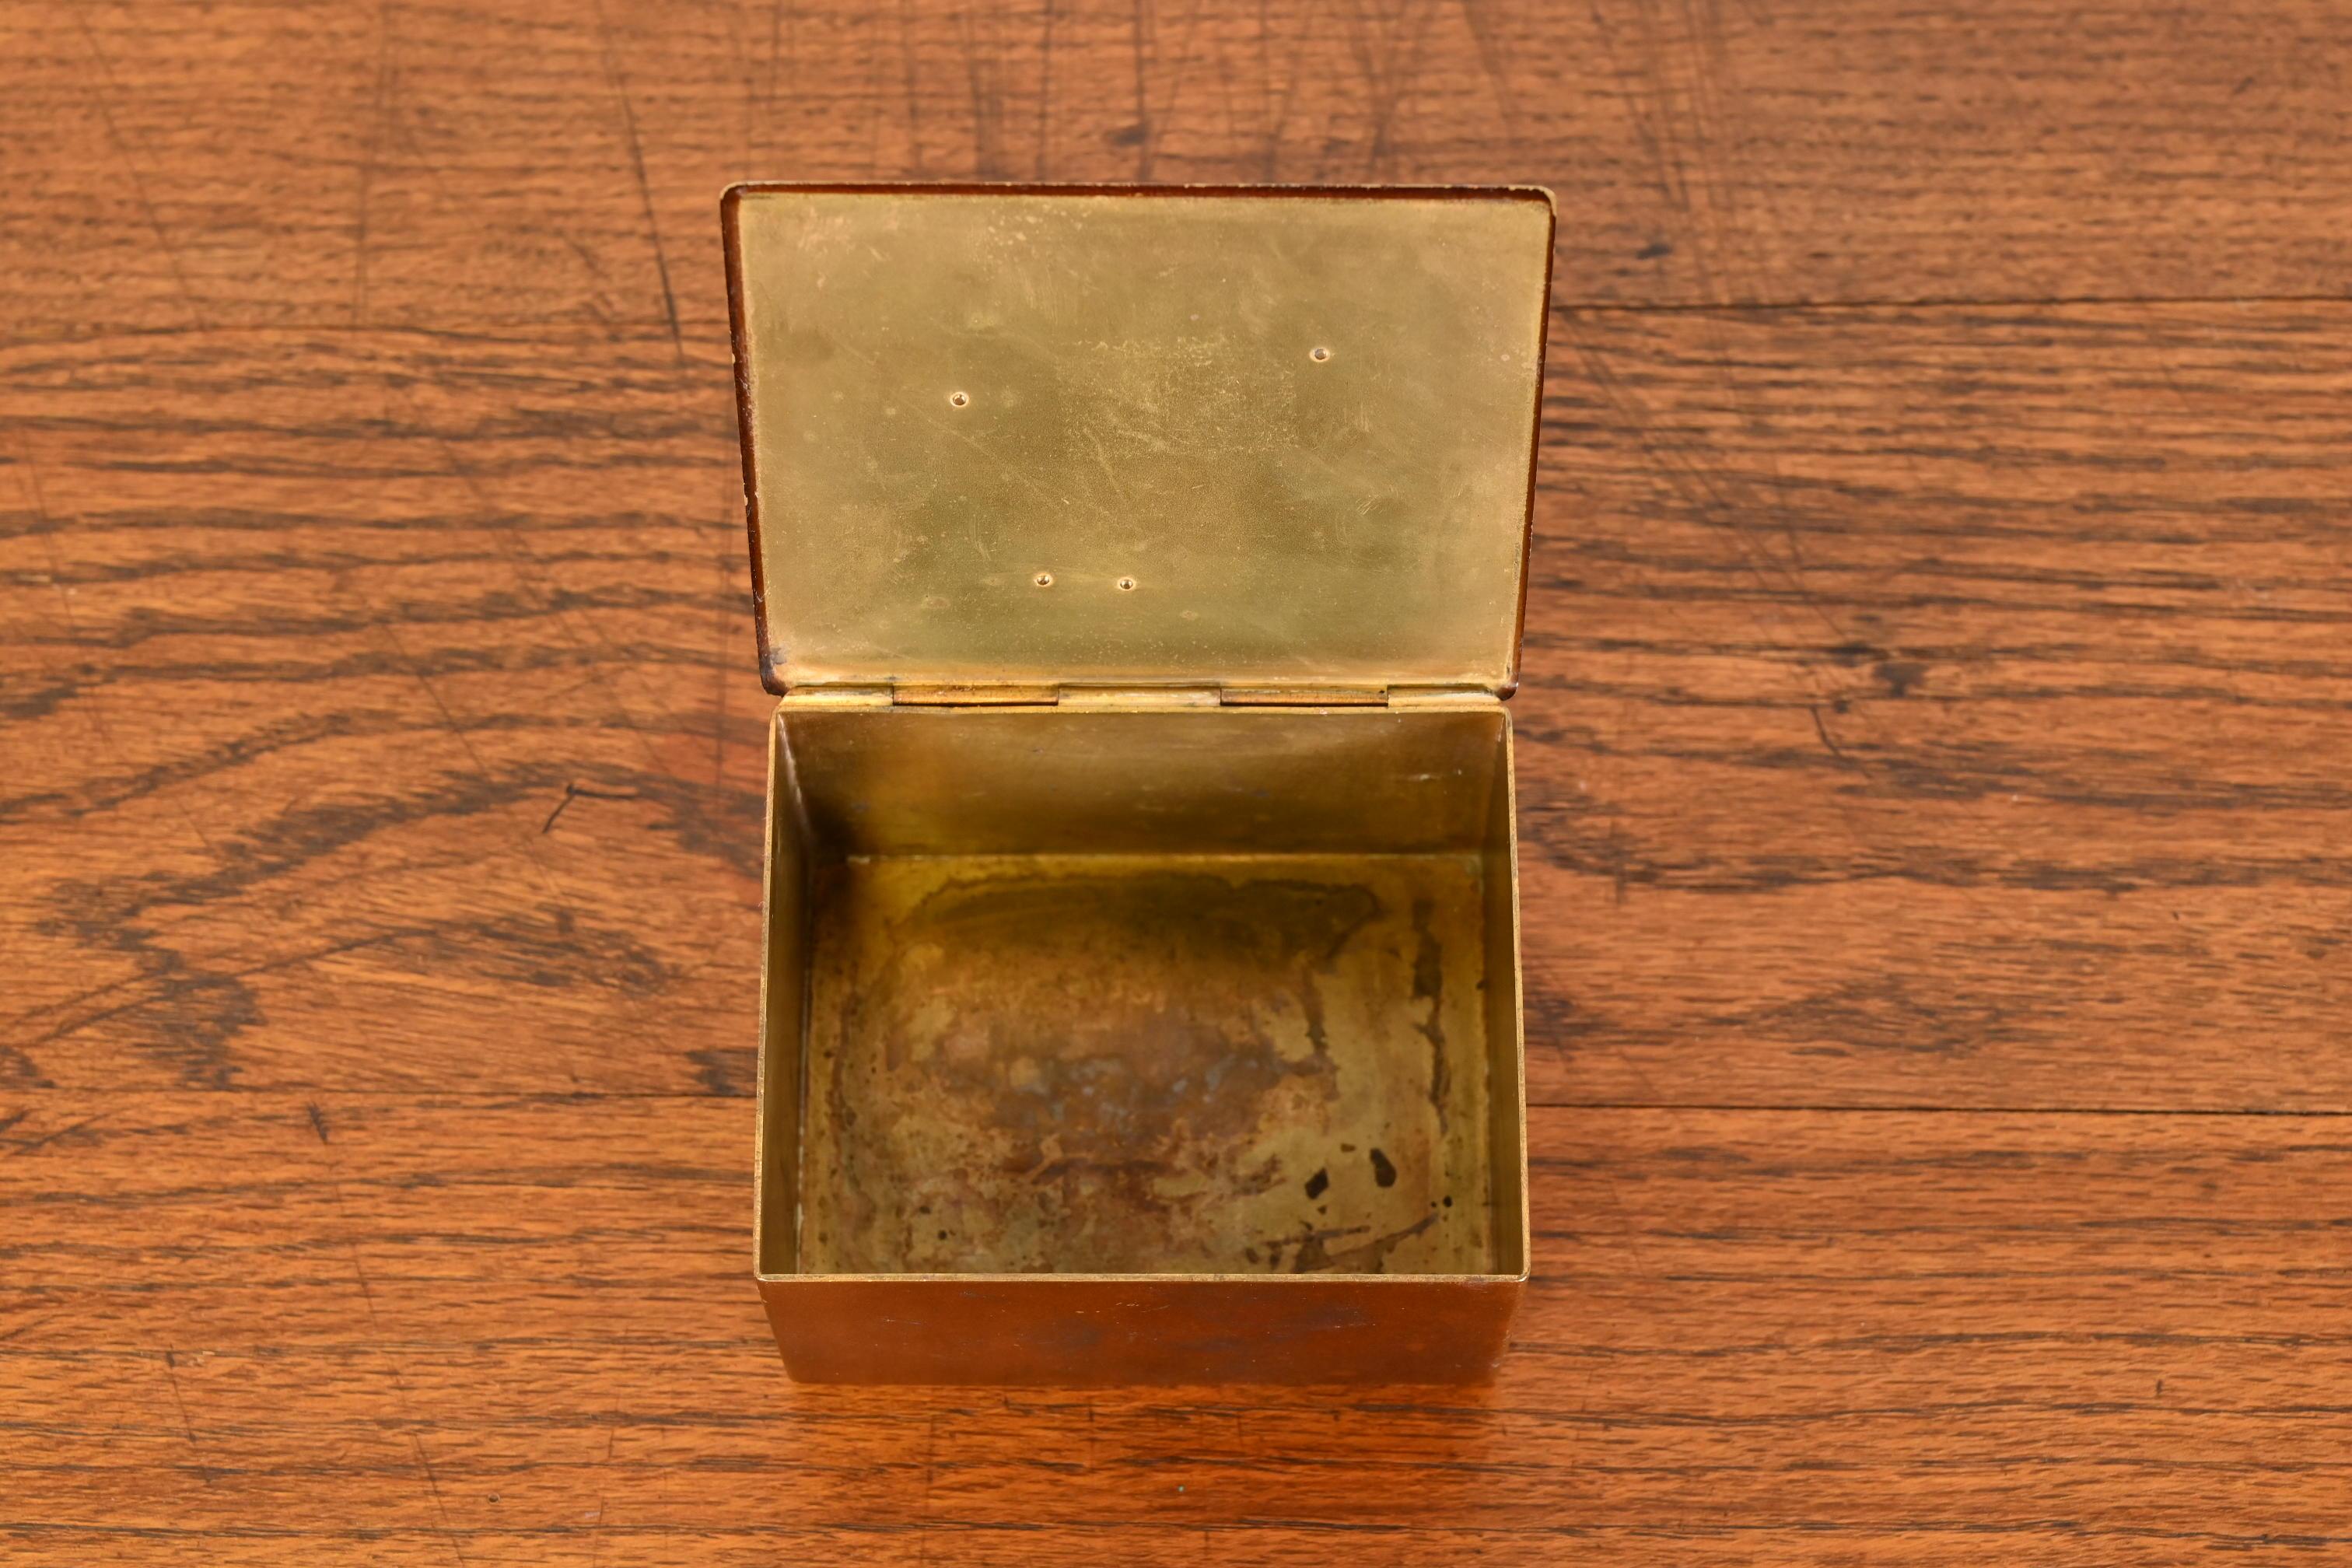 Tiffany & Co. New York Decorative Copper Desk Box or Cigarette Box 1